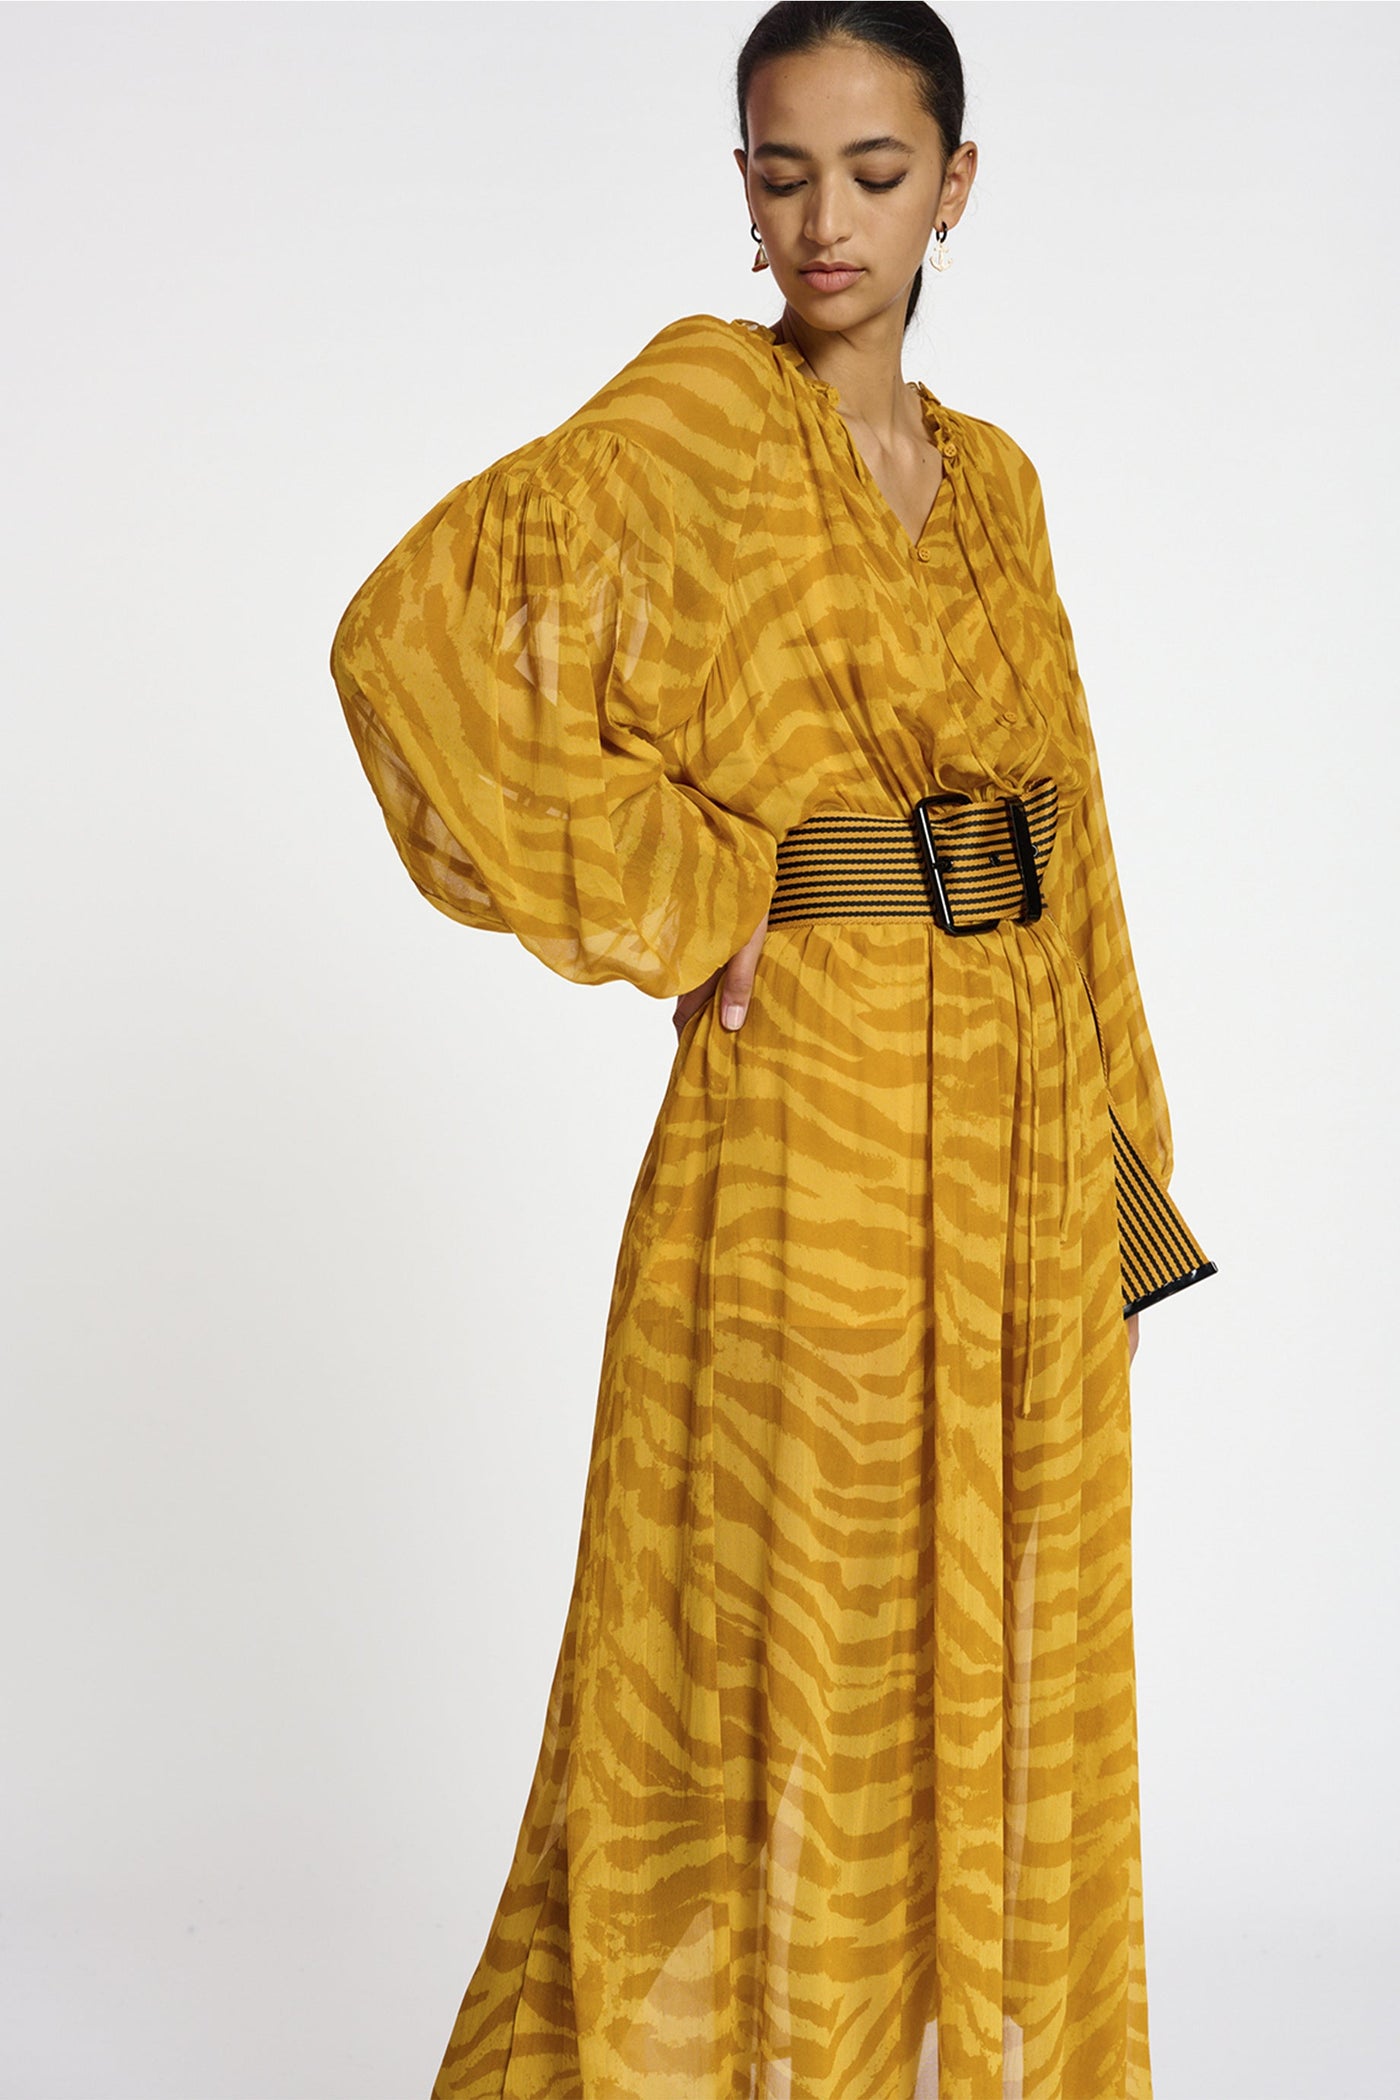 Essentiel Antwerp Beekness Dress - Yellow